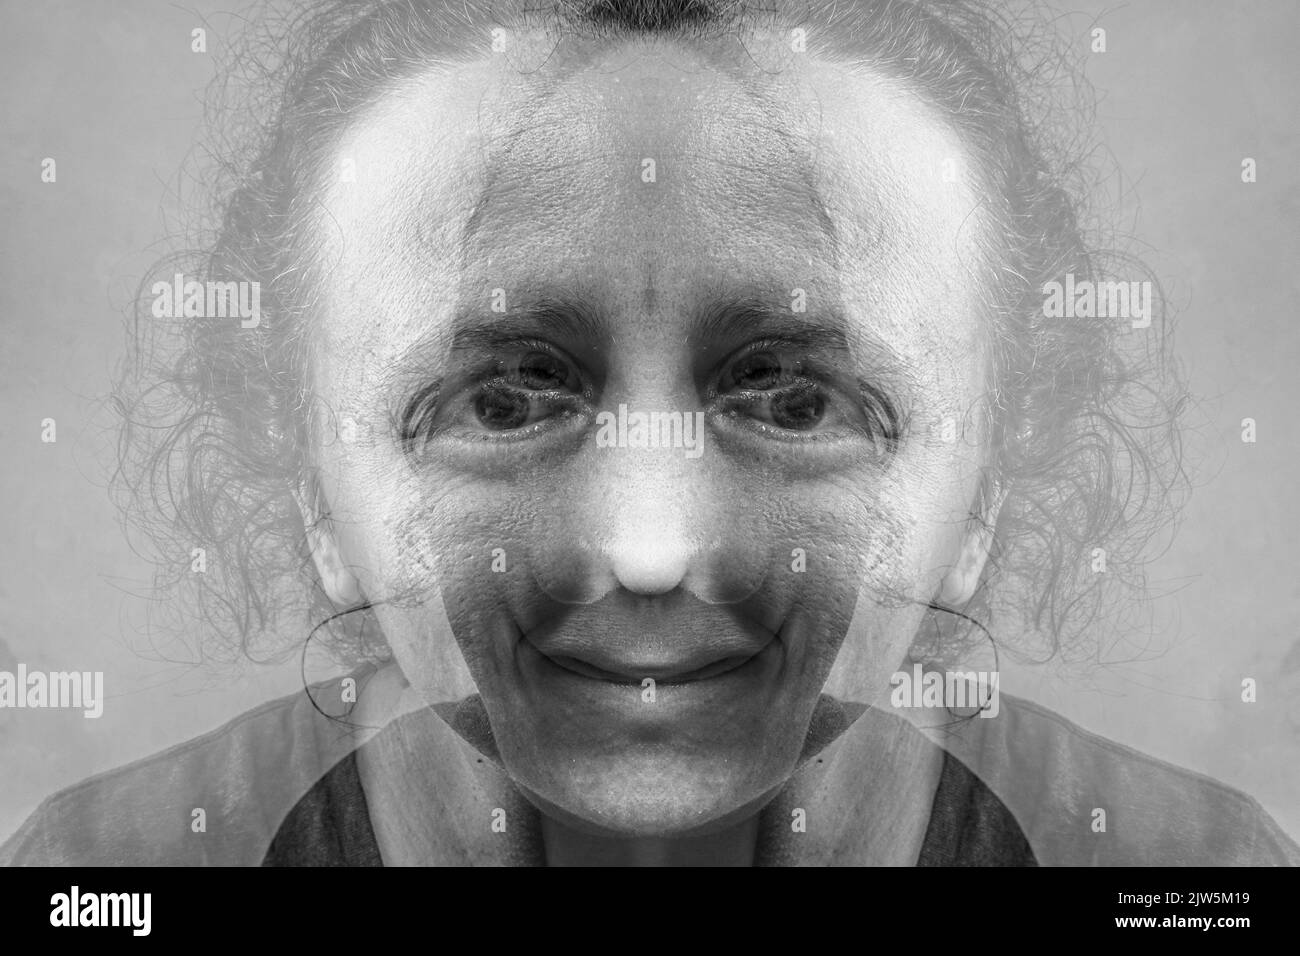 Schwarz weiße Frau Gesicht Persönlichkeitsstörung, Schizophrenie bipolar. Stockfoto